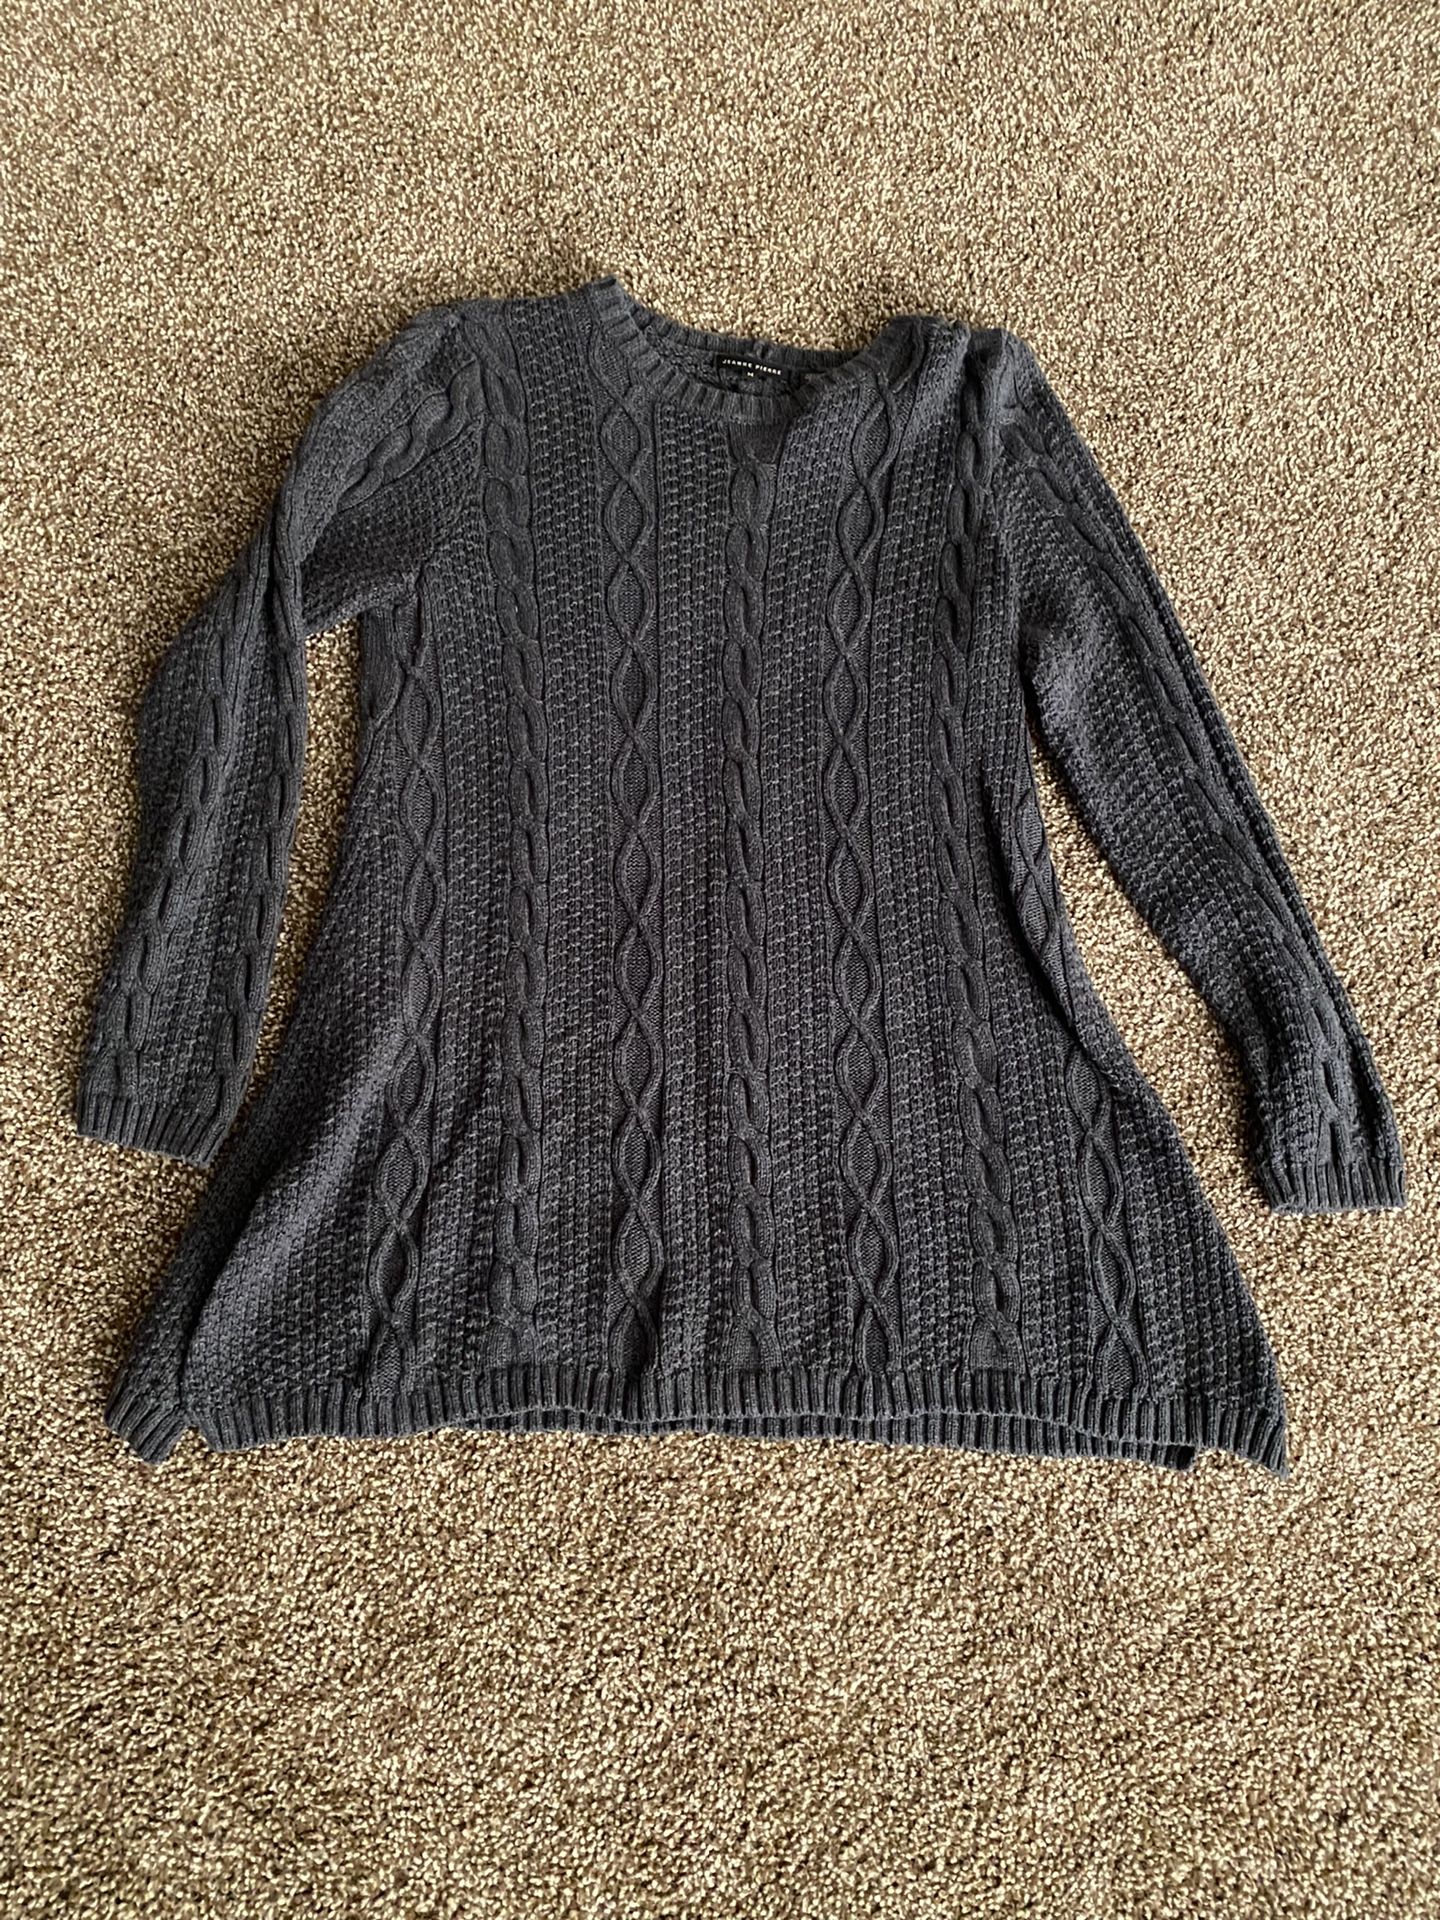 Women’s Tunic Sweater